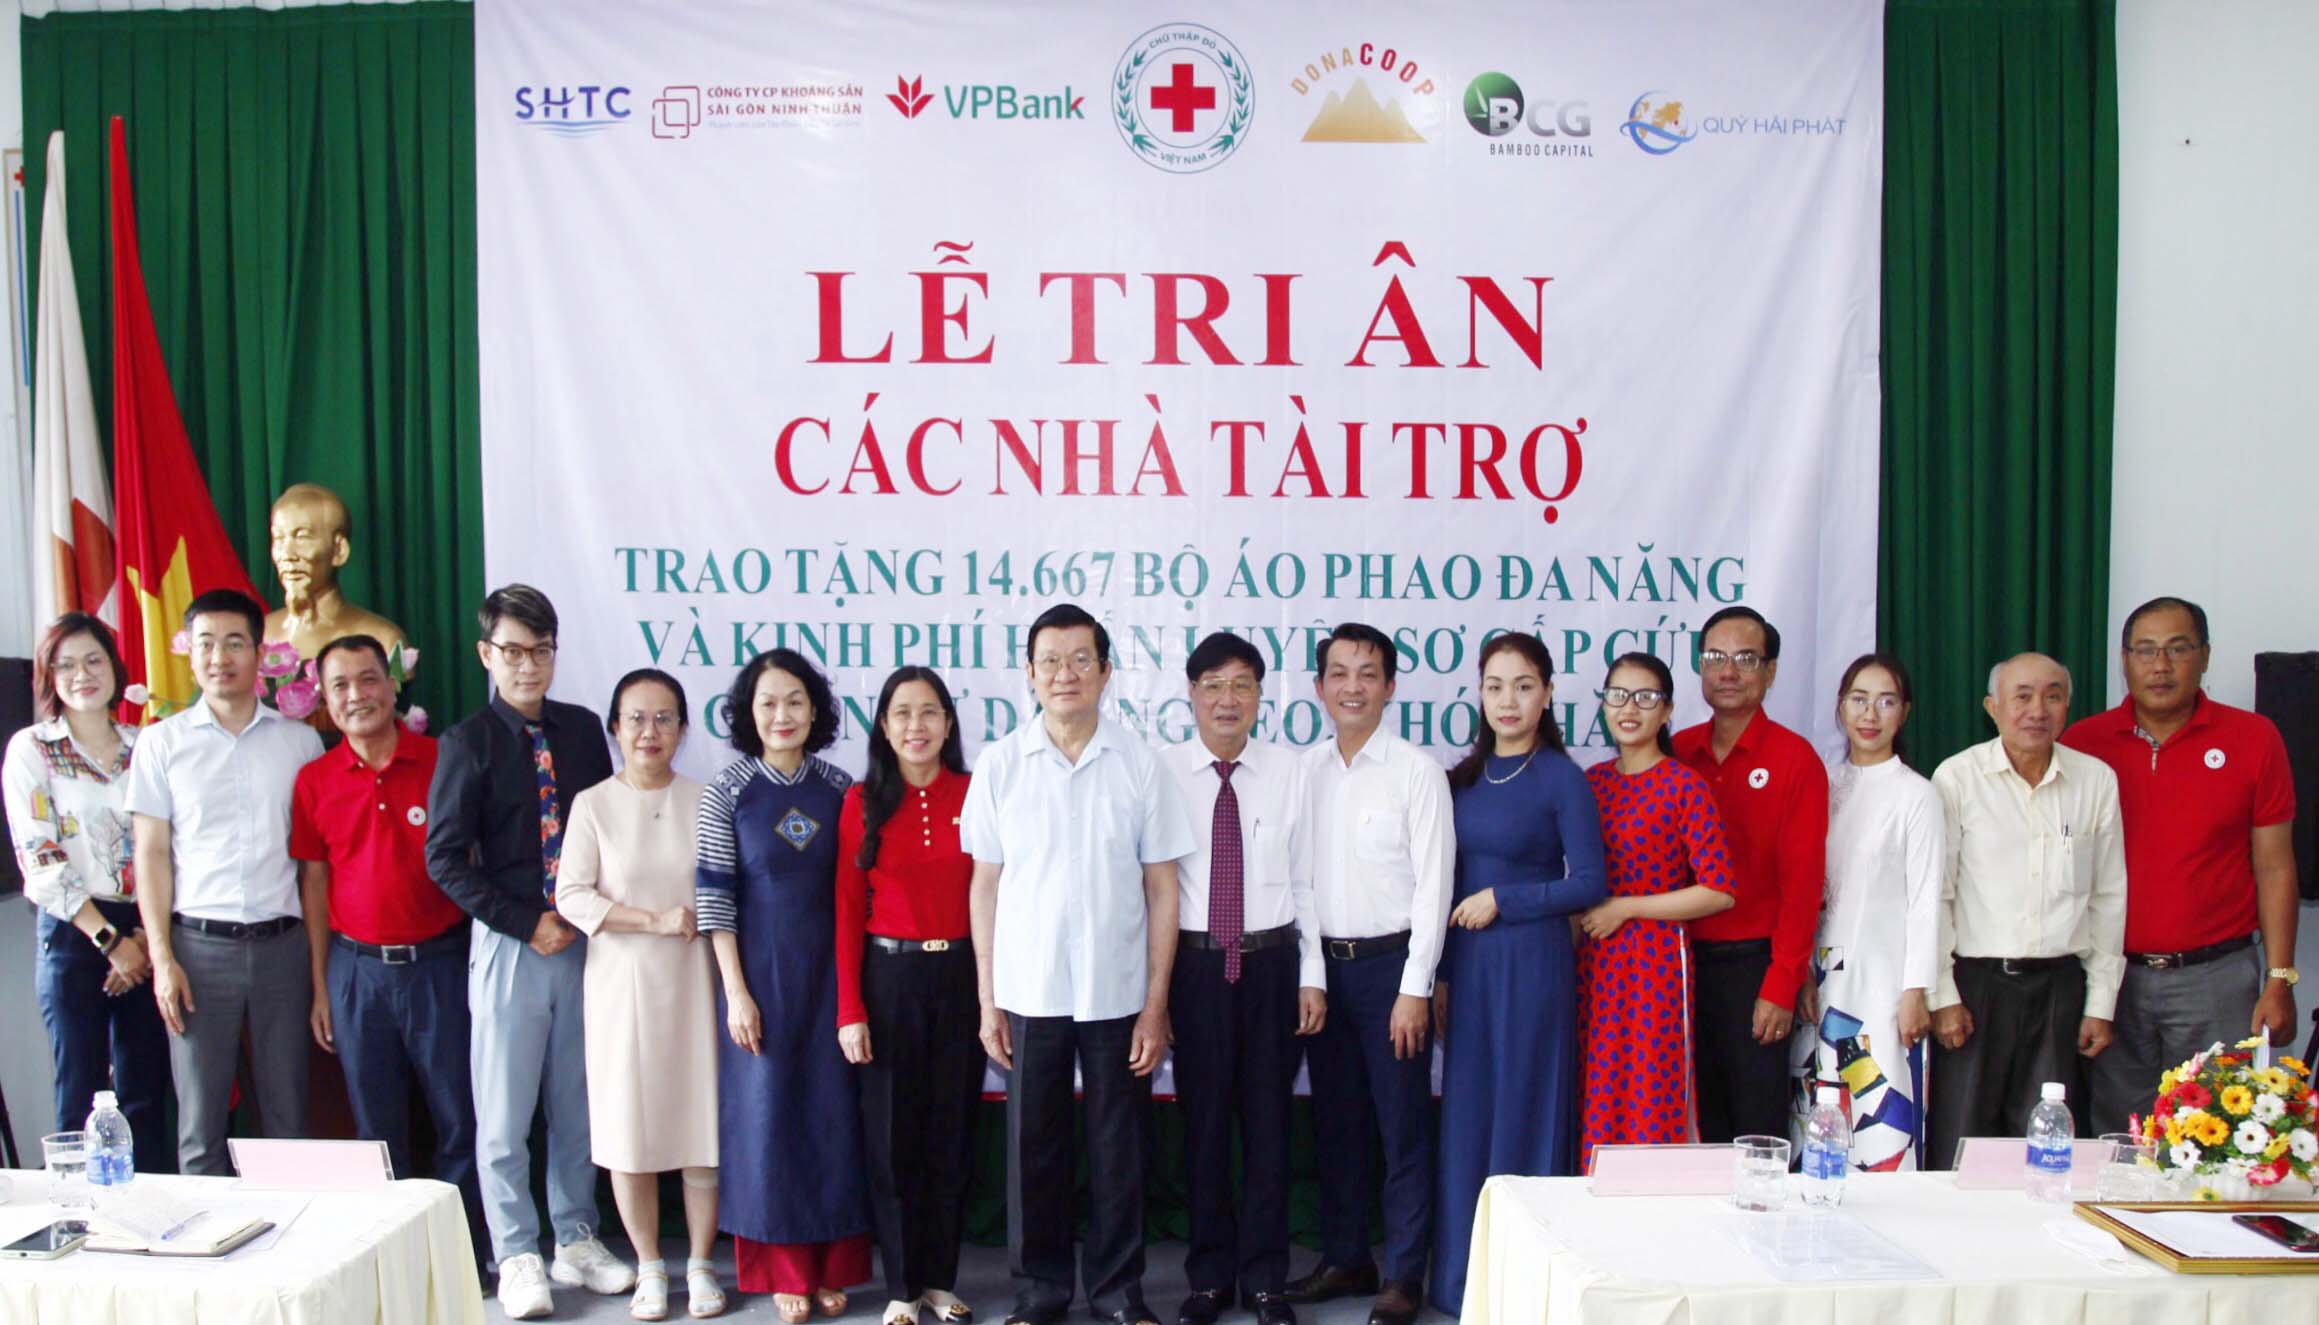 Hội Chữ thập đỏ Việt Nam tri ân các nhà tài trợ áo phao cứu sinh đa năng